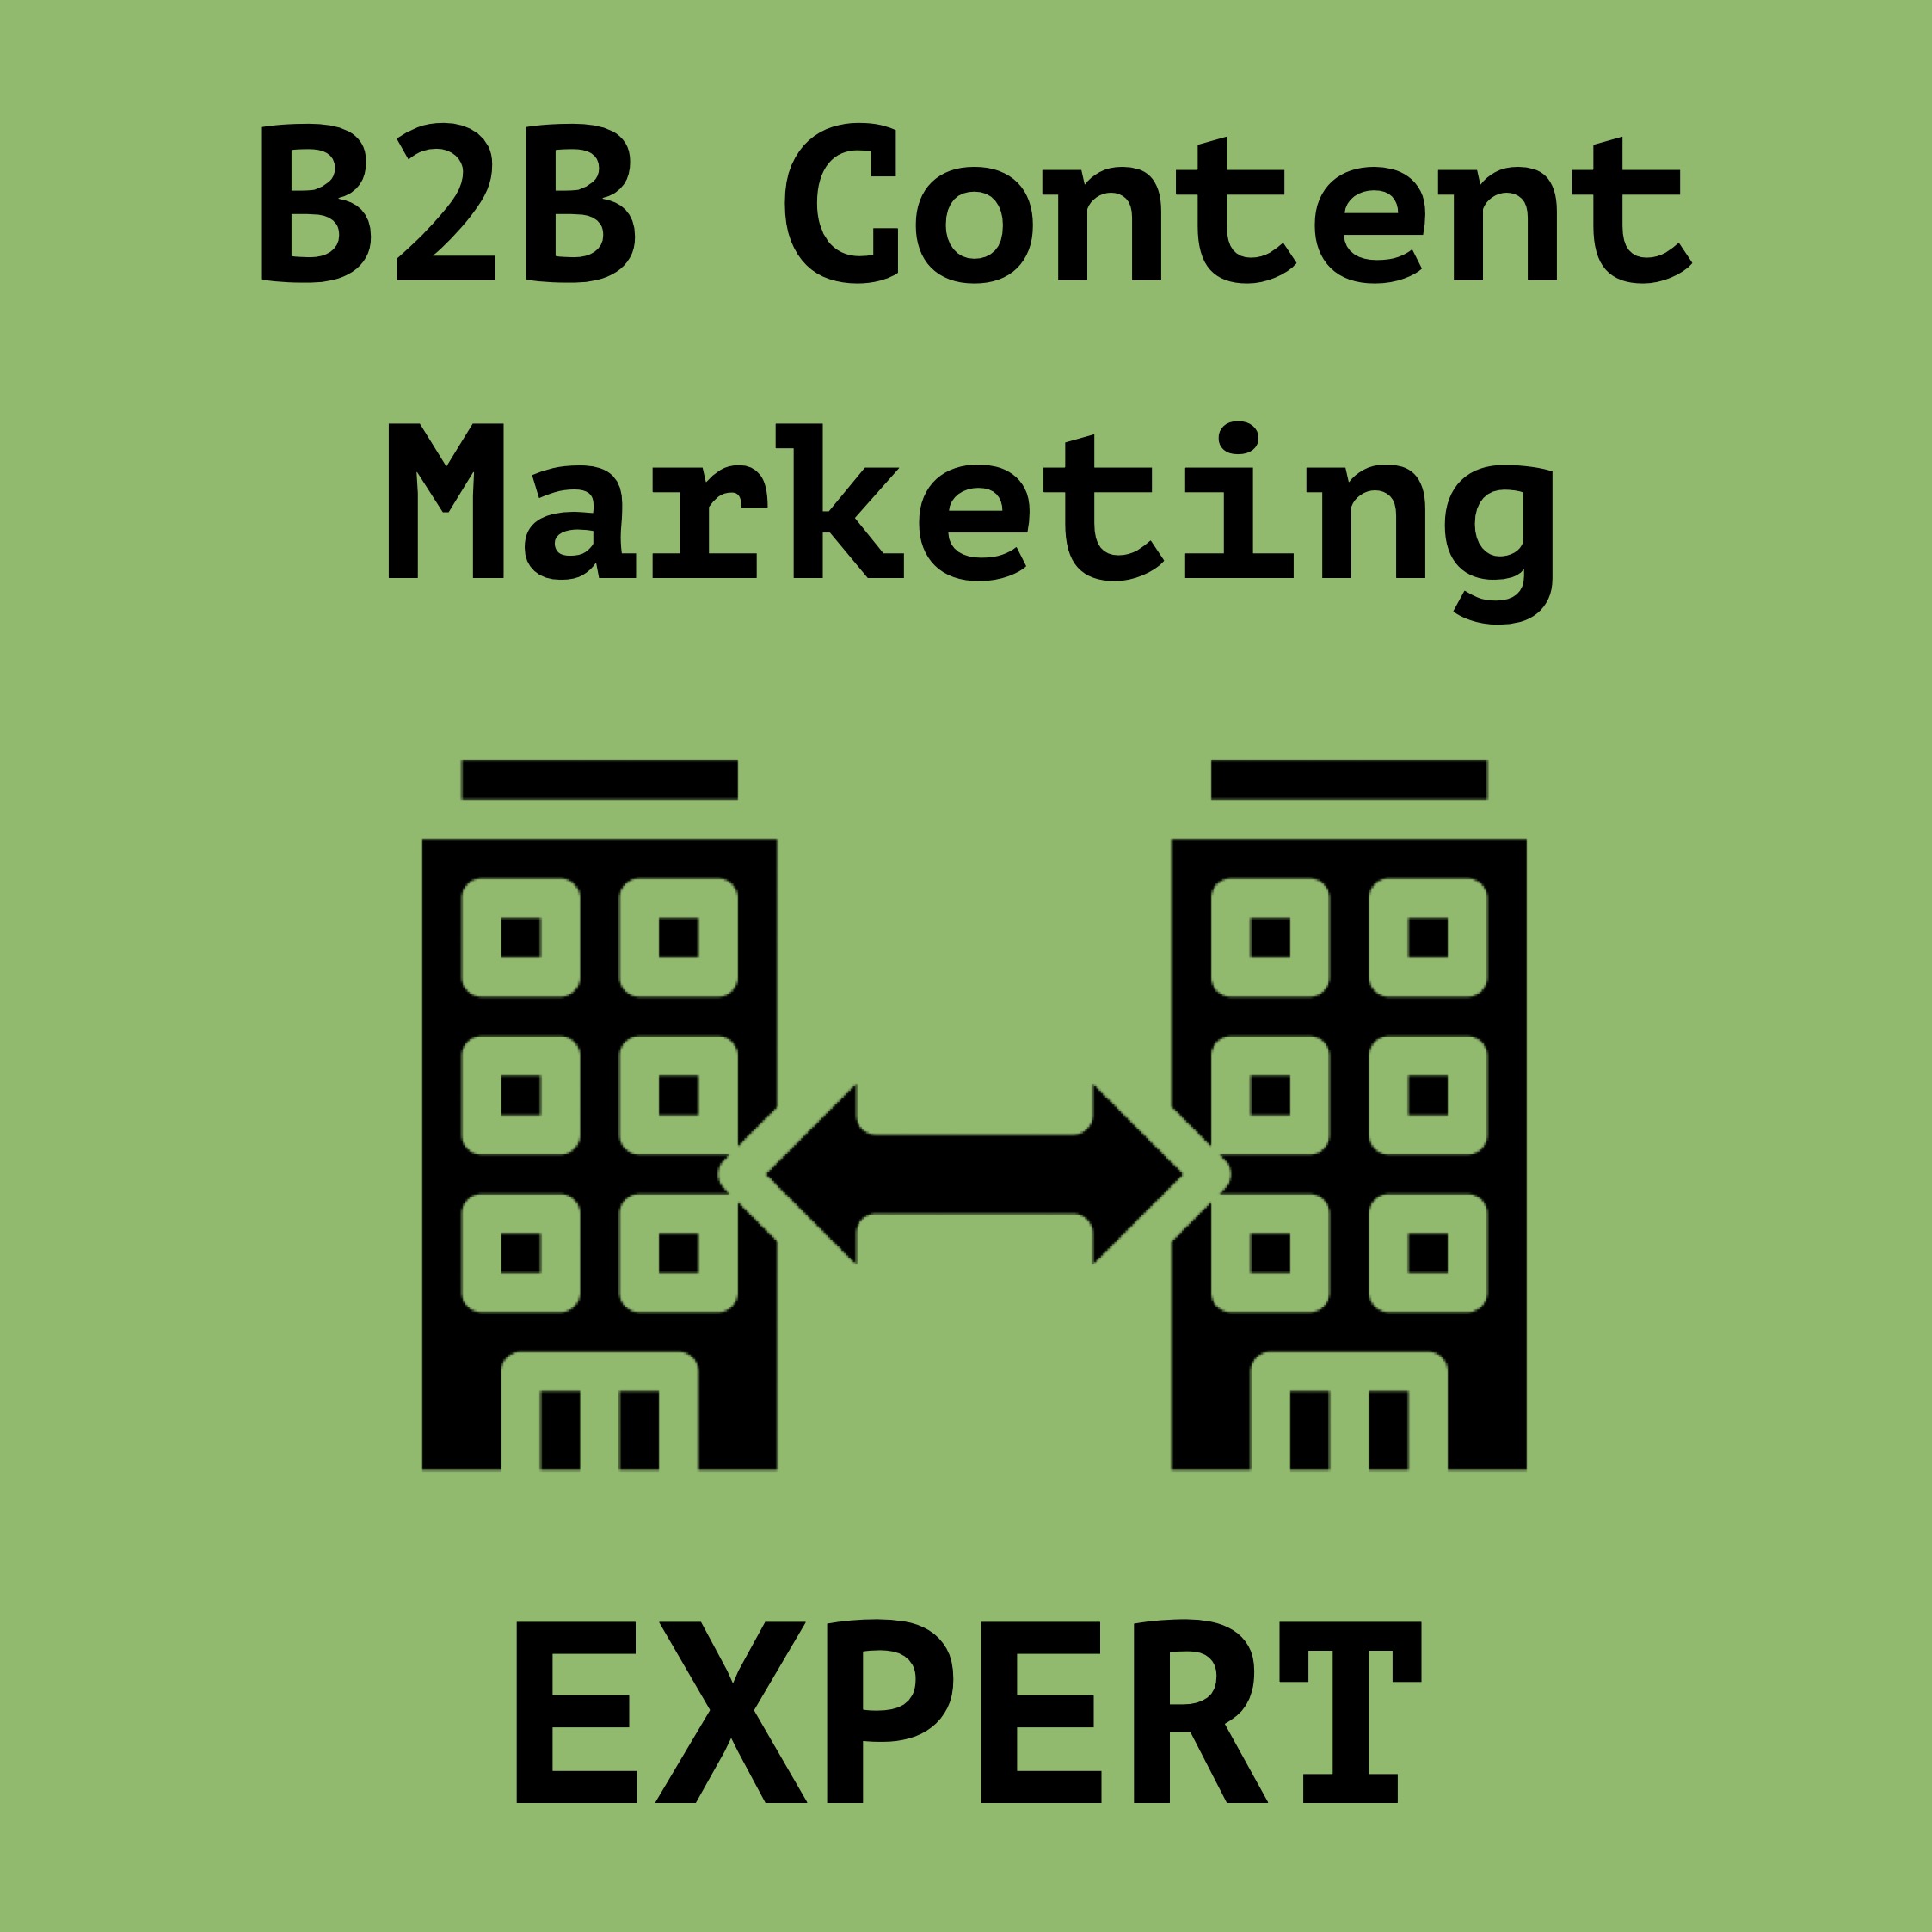 B2b content marketing expert